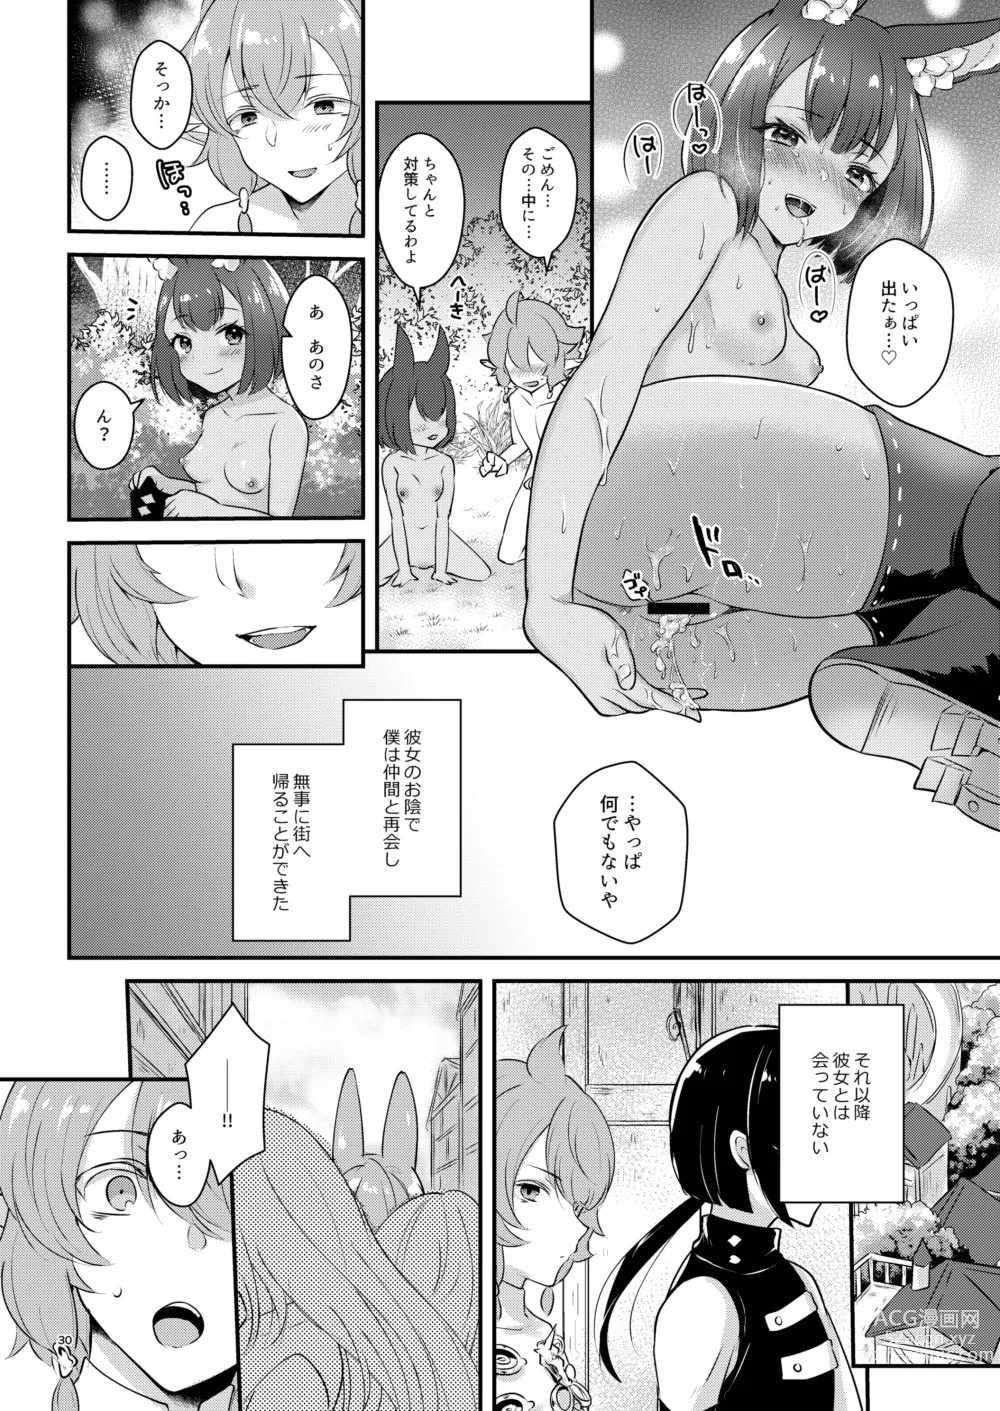 Page 30 of doujinshi Hound-chan wa Ecchi ga Shitai.